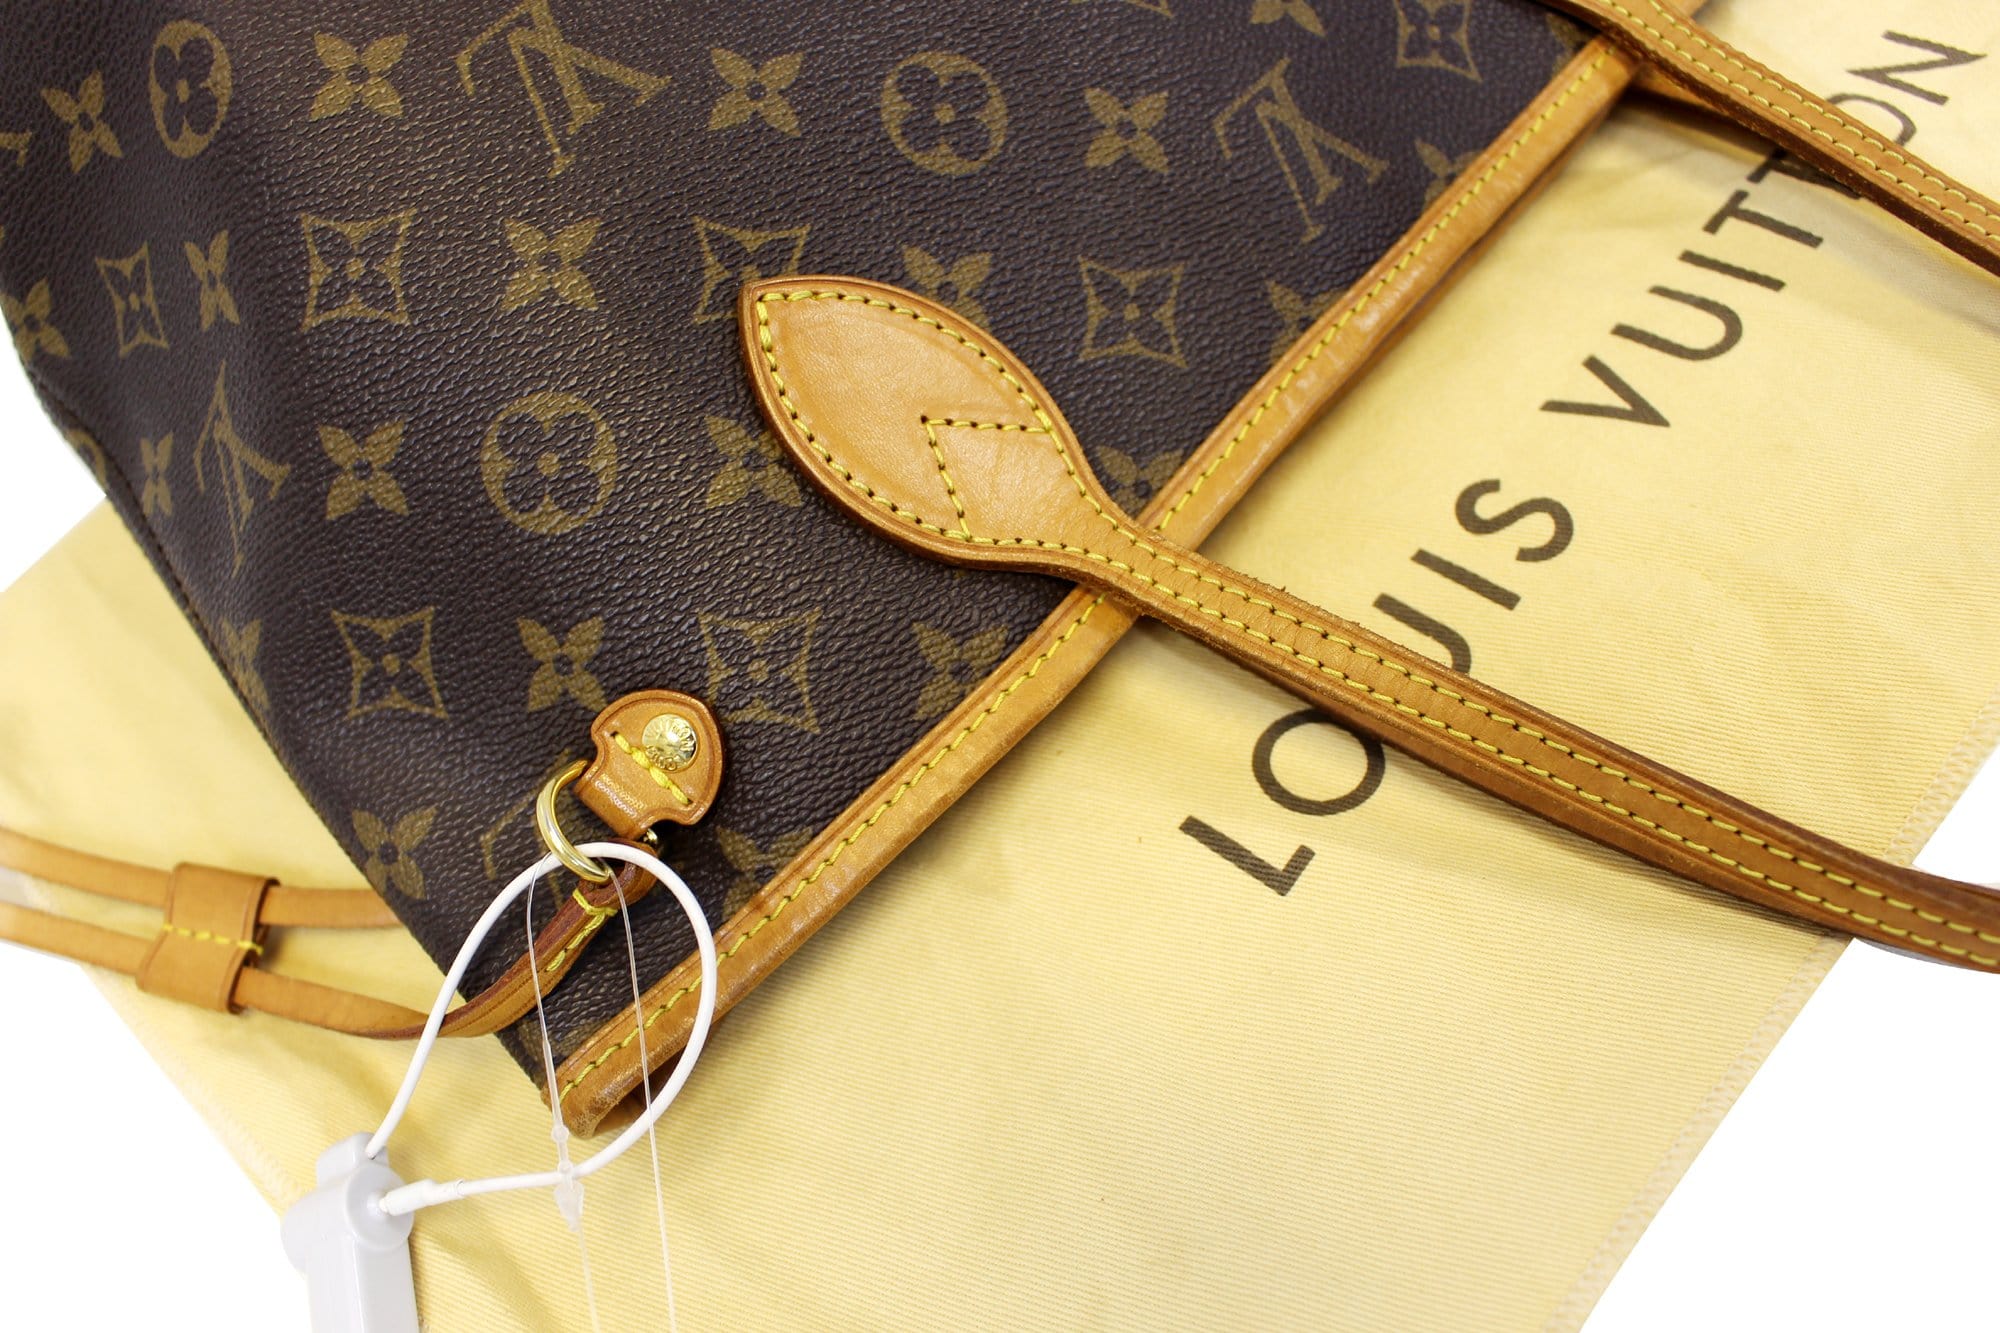 Authenticated Used Louis Vuitton M45848 Sack Pla PM Monogram Tote Bag  Canvas Women's LOUIS VUITTON